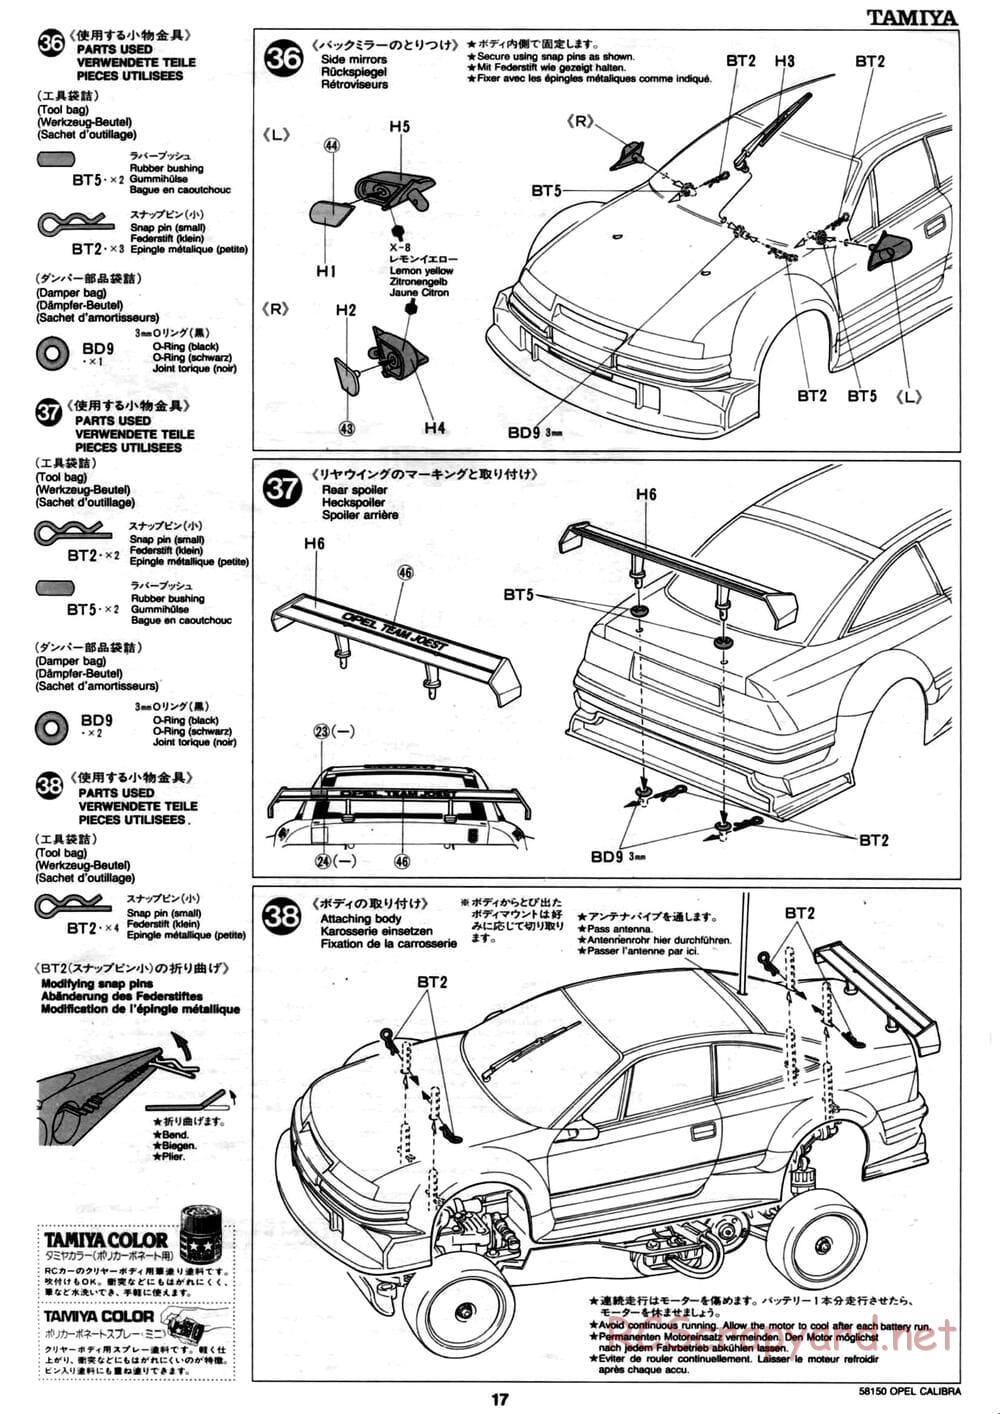 Tamiya - Opel Calibra V6 DTM - TA-02 Chassis - Manual - Page 18